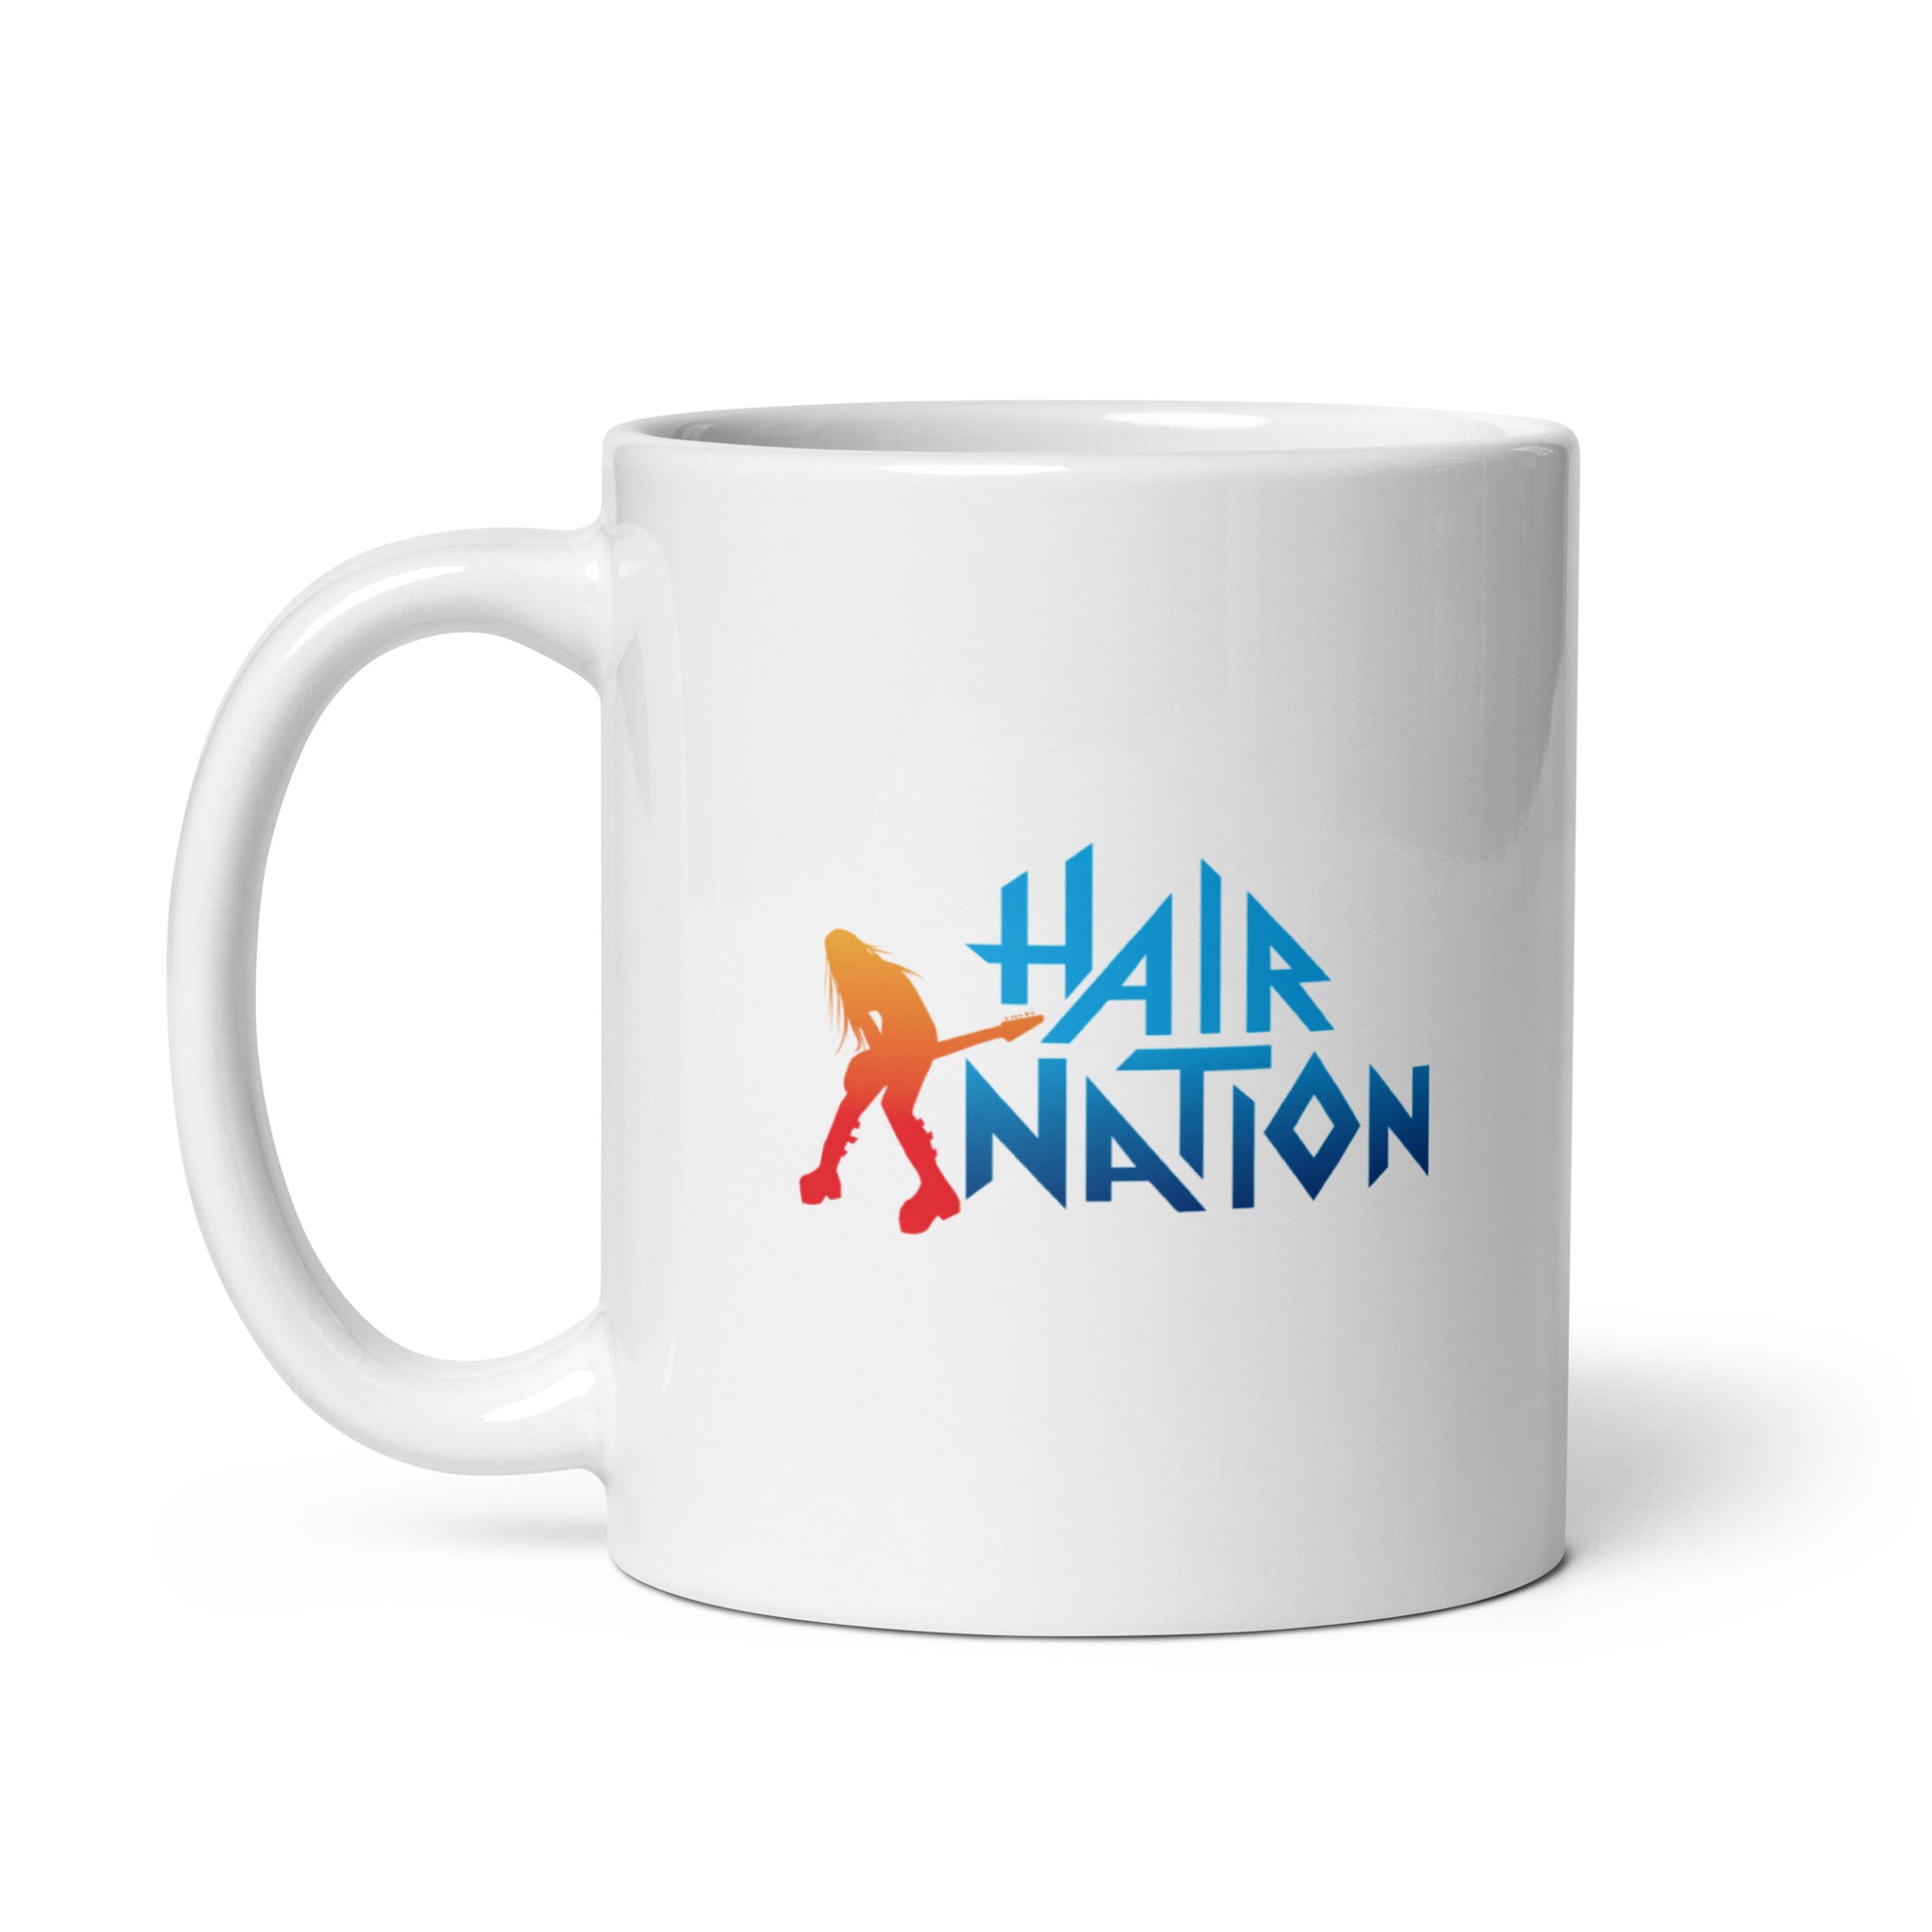 Hair Nation: Mug